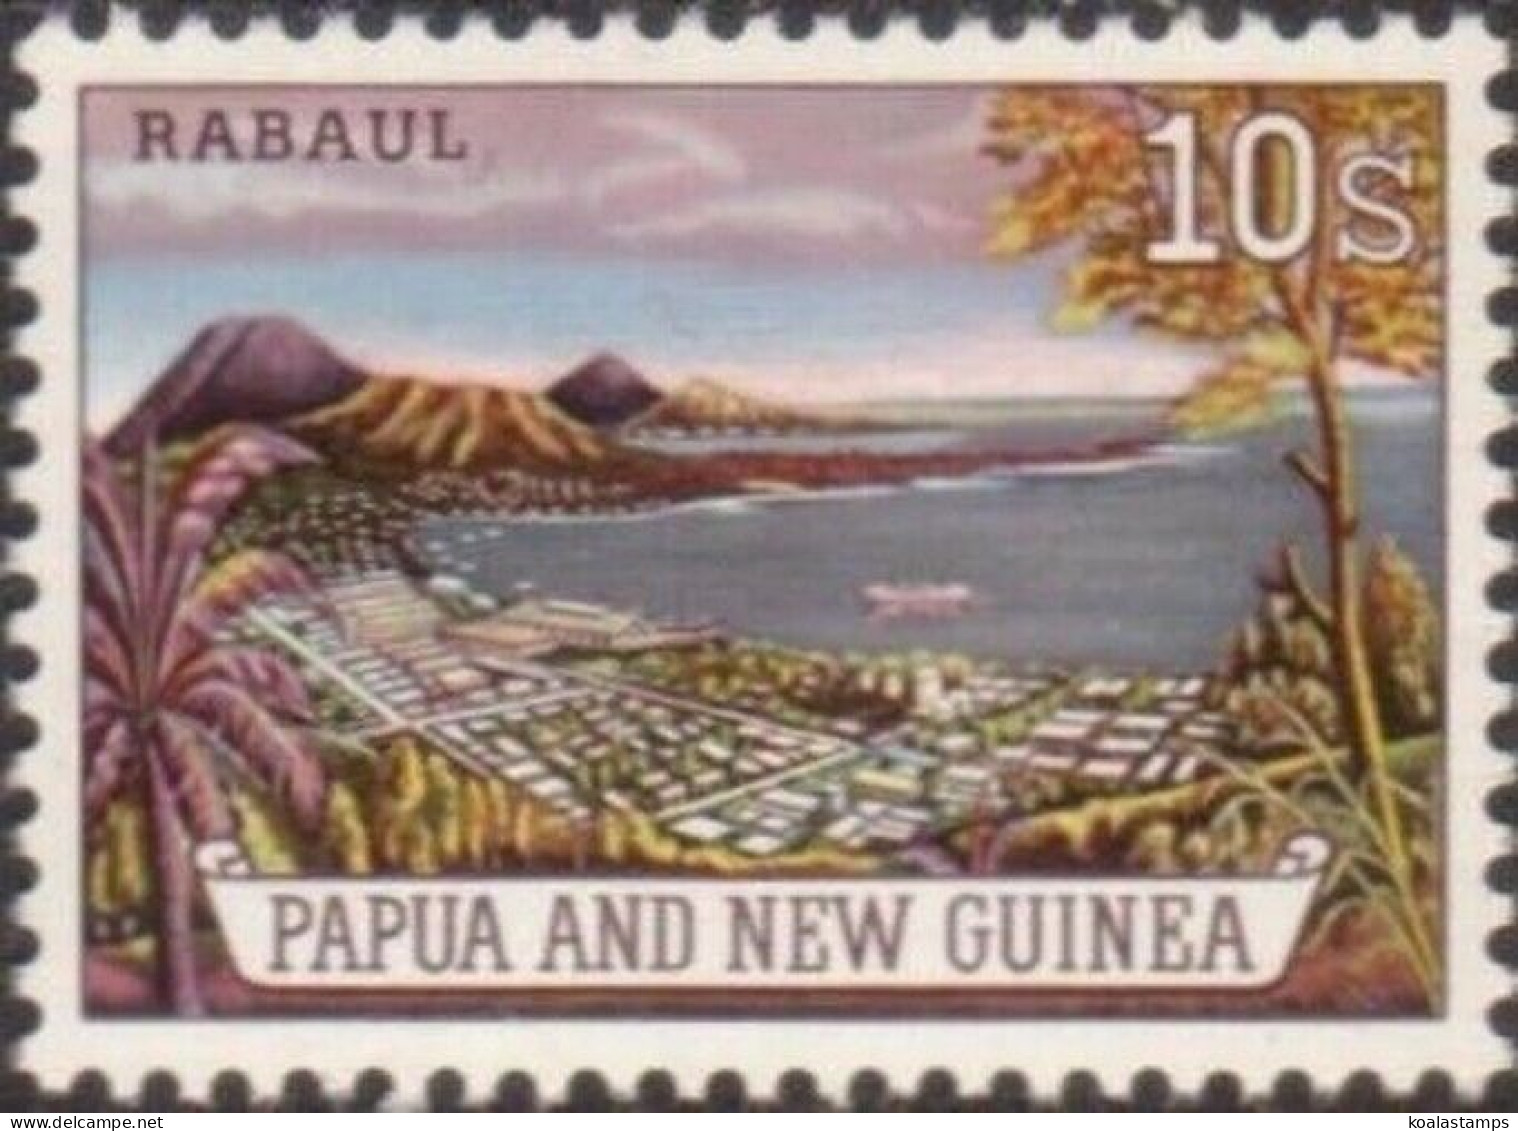 Papua New Guinea 1963 SG44 10/- Rabaul MNH - Papúa Nueva Guinea